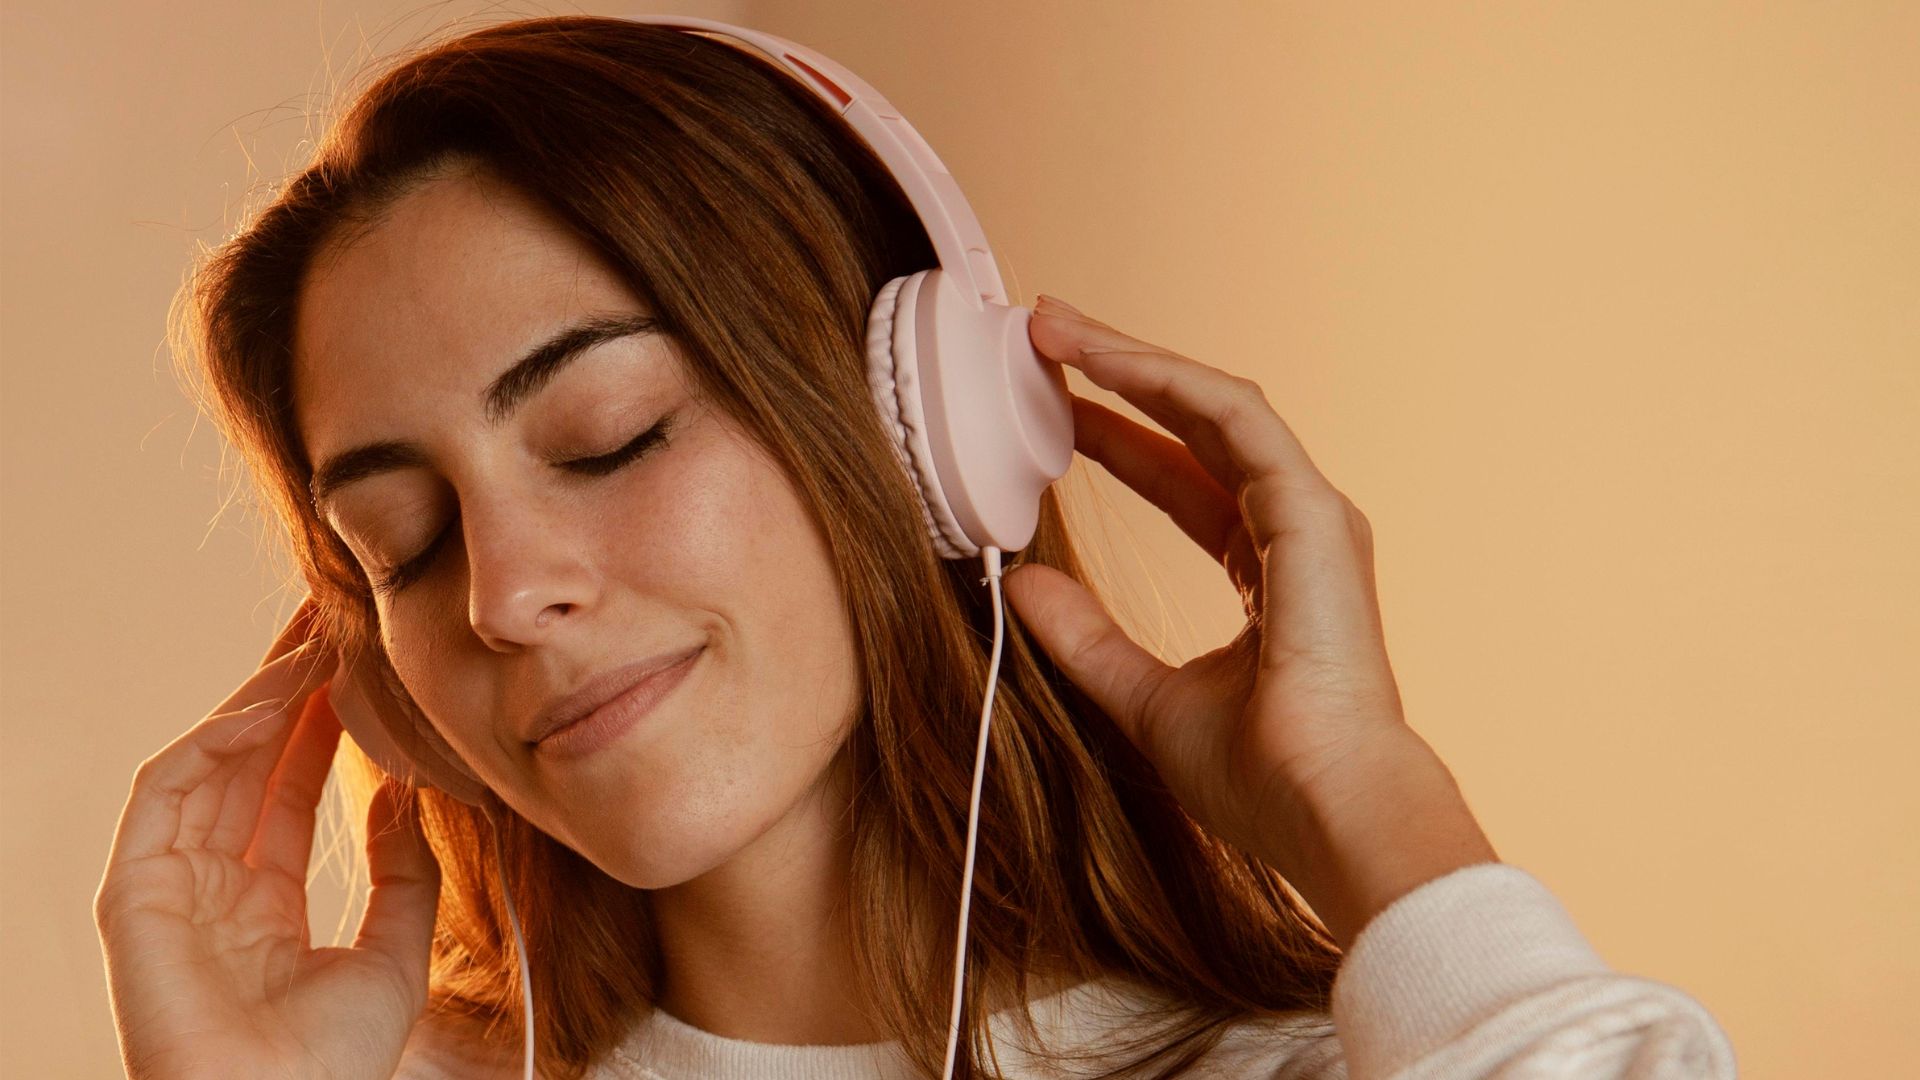 Młoda kobieta ma założone różowe słuchawki na uszach i słucha muzyki.